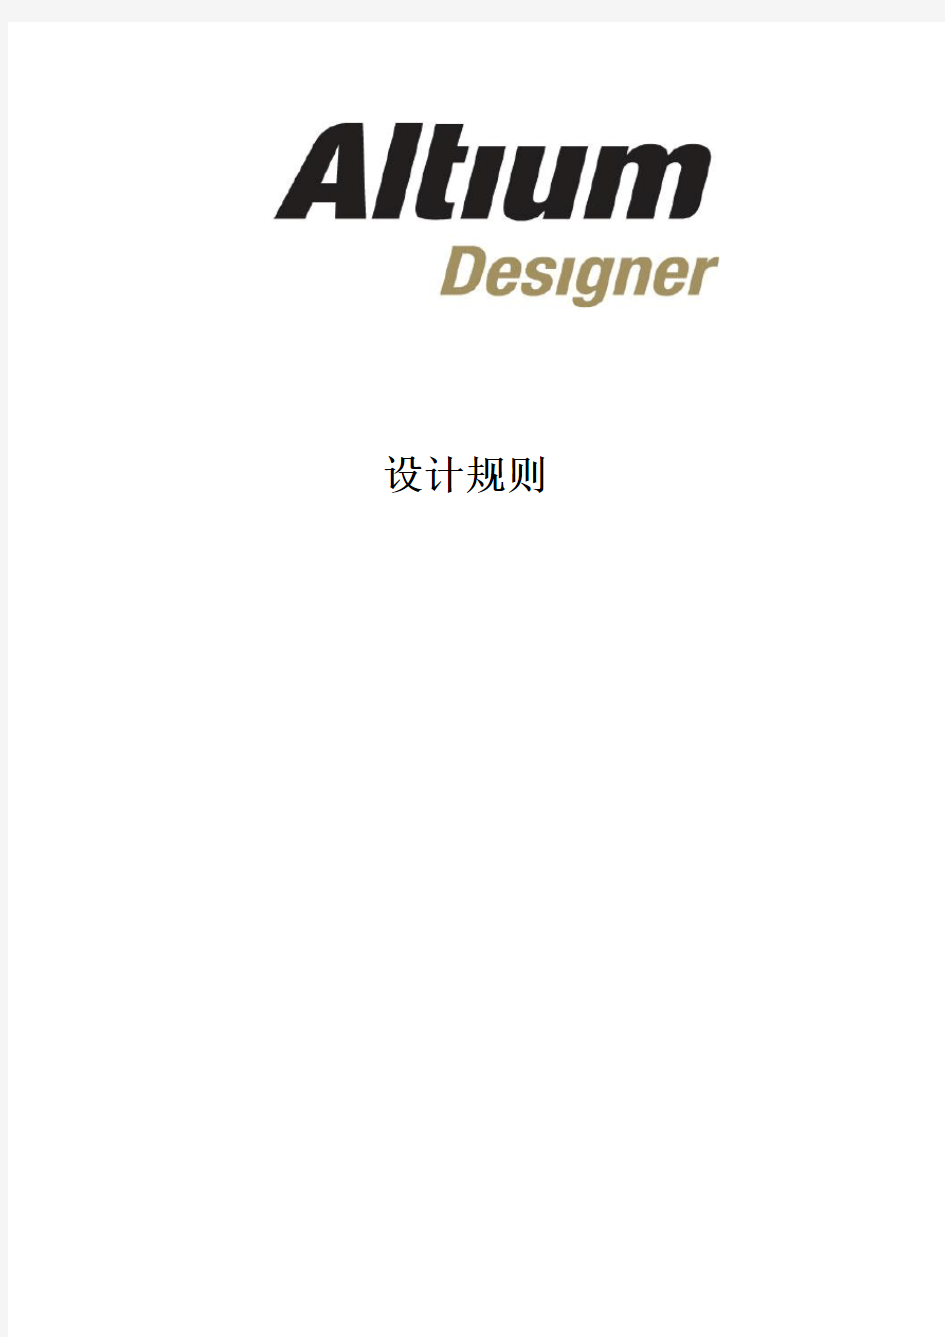 Altium designer PCB设计规则中文版